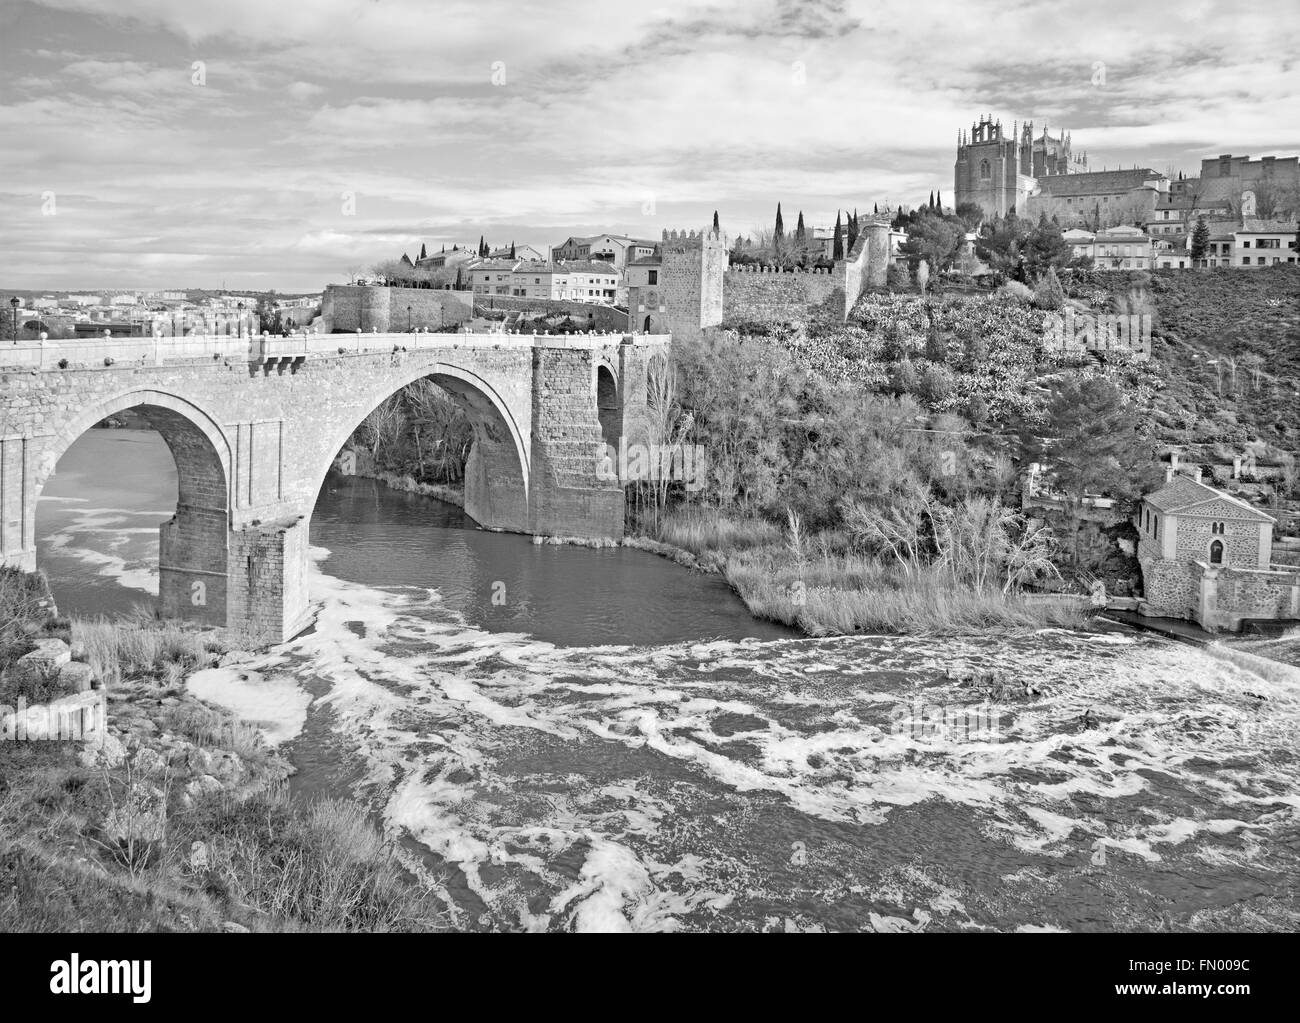 Toledo - Regarder vers San Martin s'épouse ou pont de San Martin au monastère de saint Jean de la Roi dans la lumière du matin Banque D'Images